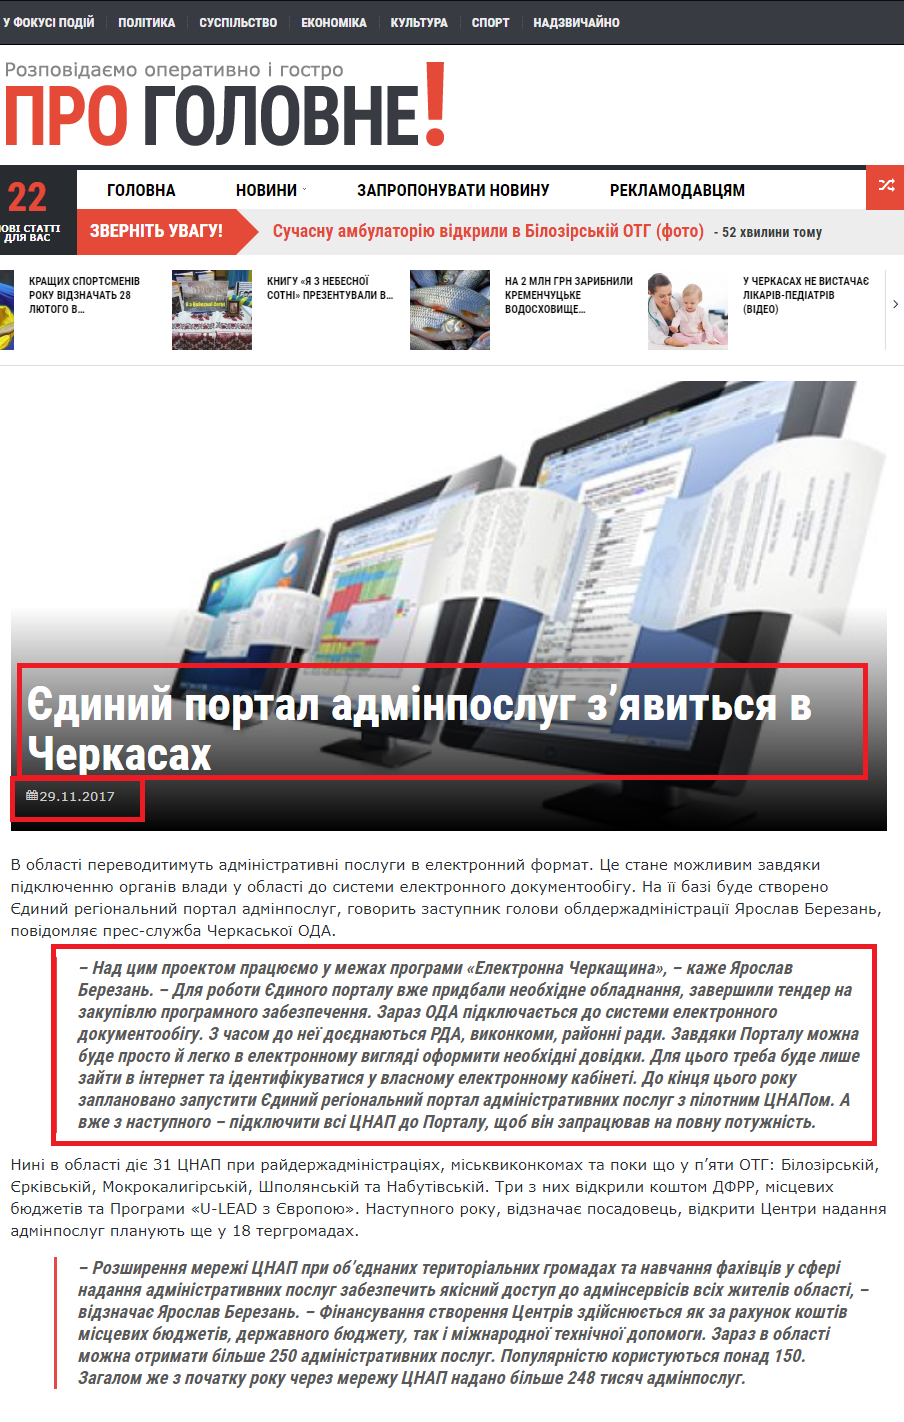 http://progolovne.ck.ua/edynyj-portal-adminposluh-zyavytsya-v-cherkasah/